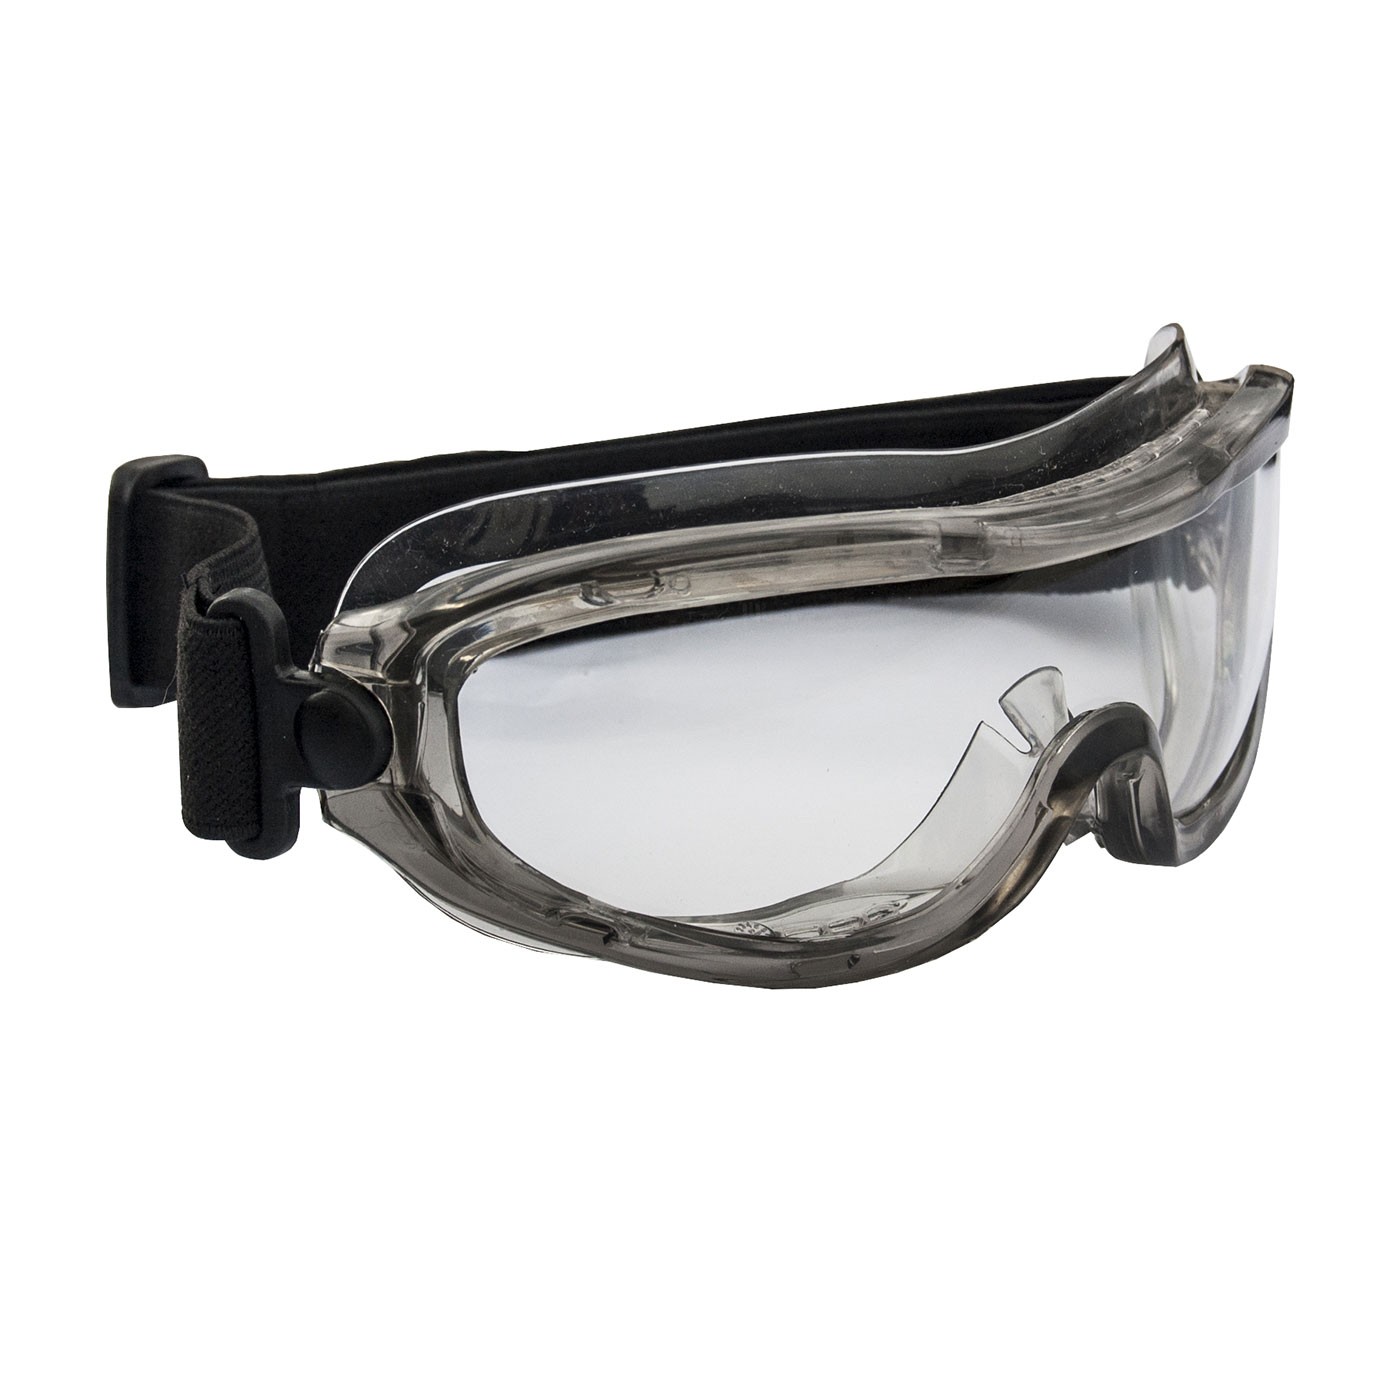 Occhiale a maschere con ventilazione indiretta, grigio chiaro, lente chiara anti-graffio e anti-appannamento TRITON PIP